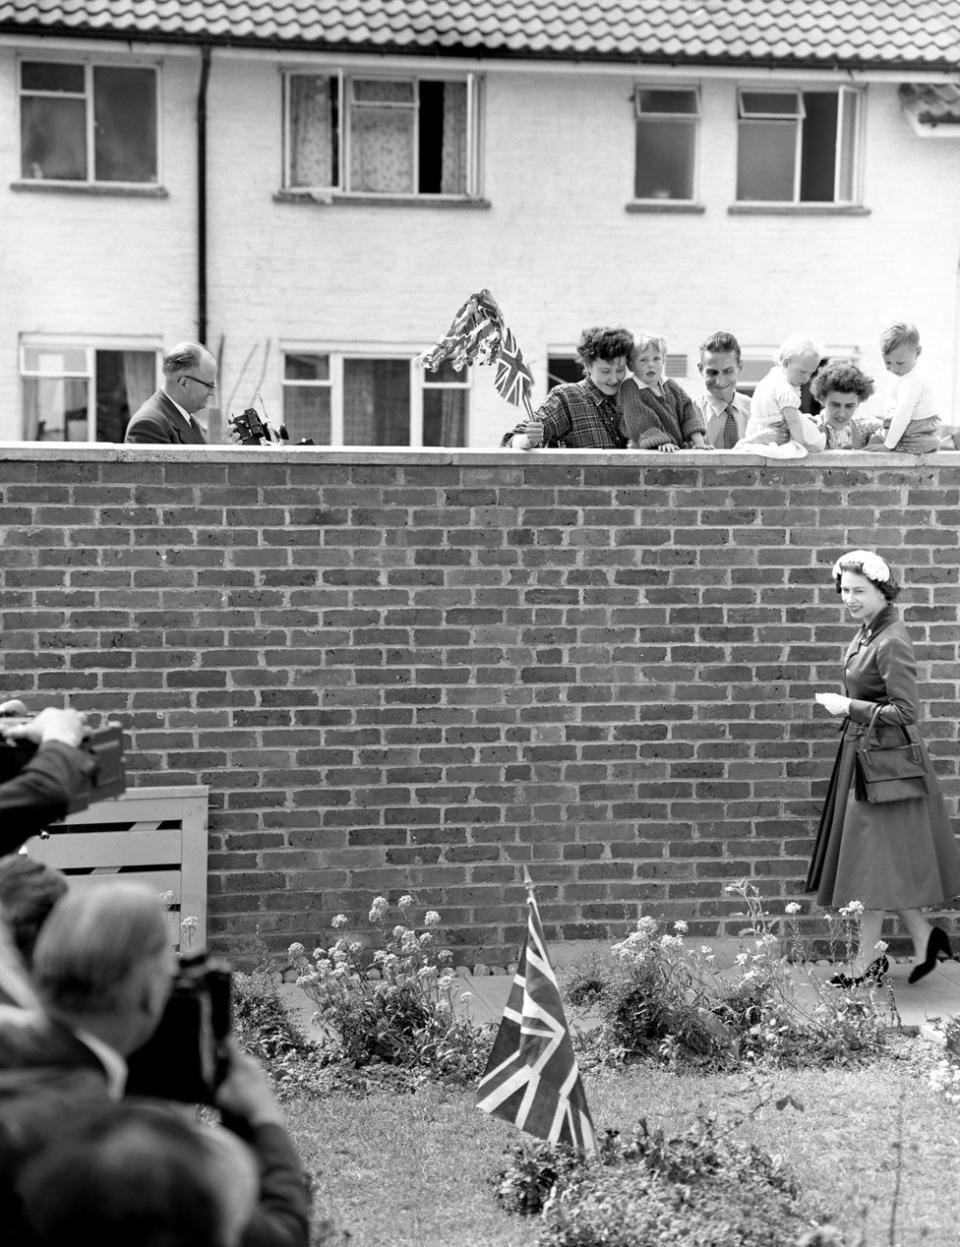 Una bandera plantada en el jardín llamó la atención de la reina, que es objeto de la mirada de los vecinos. La vieron llegar para visitar la casa de Eddie Hammond en Crawley New Town, Sussex, después de abrir el aeropuerto de Gatwick, en 1958